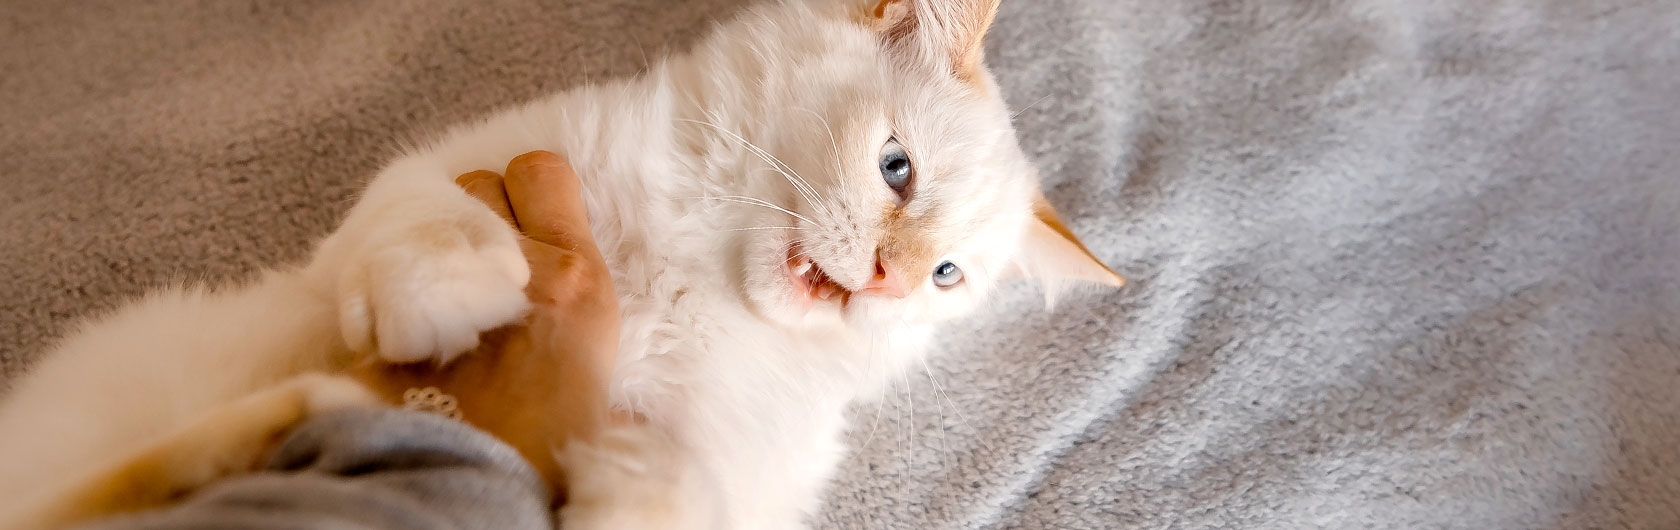 cuidados y limpieza de la dentadura de gatos